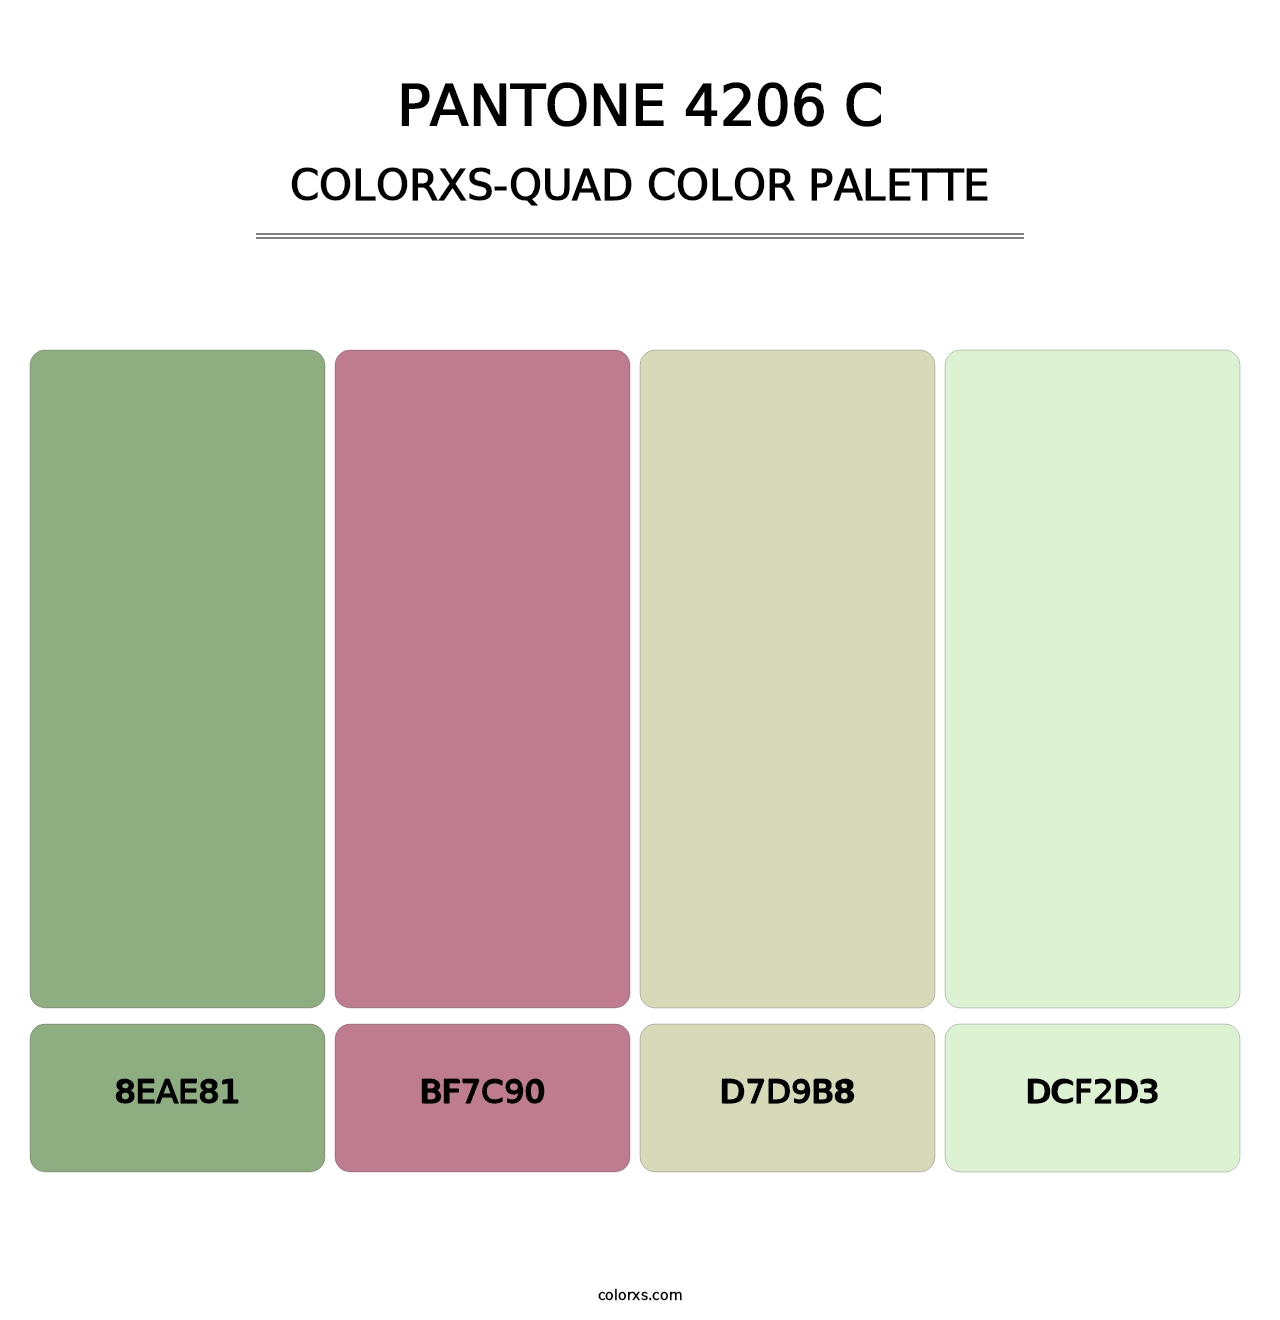 PANTONE 4206 C - Colorxs Quad Palette